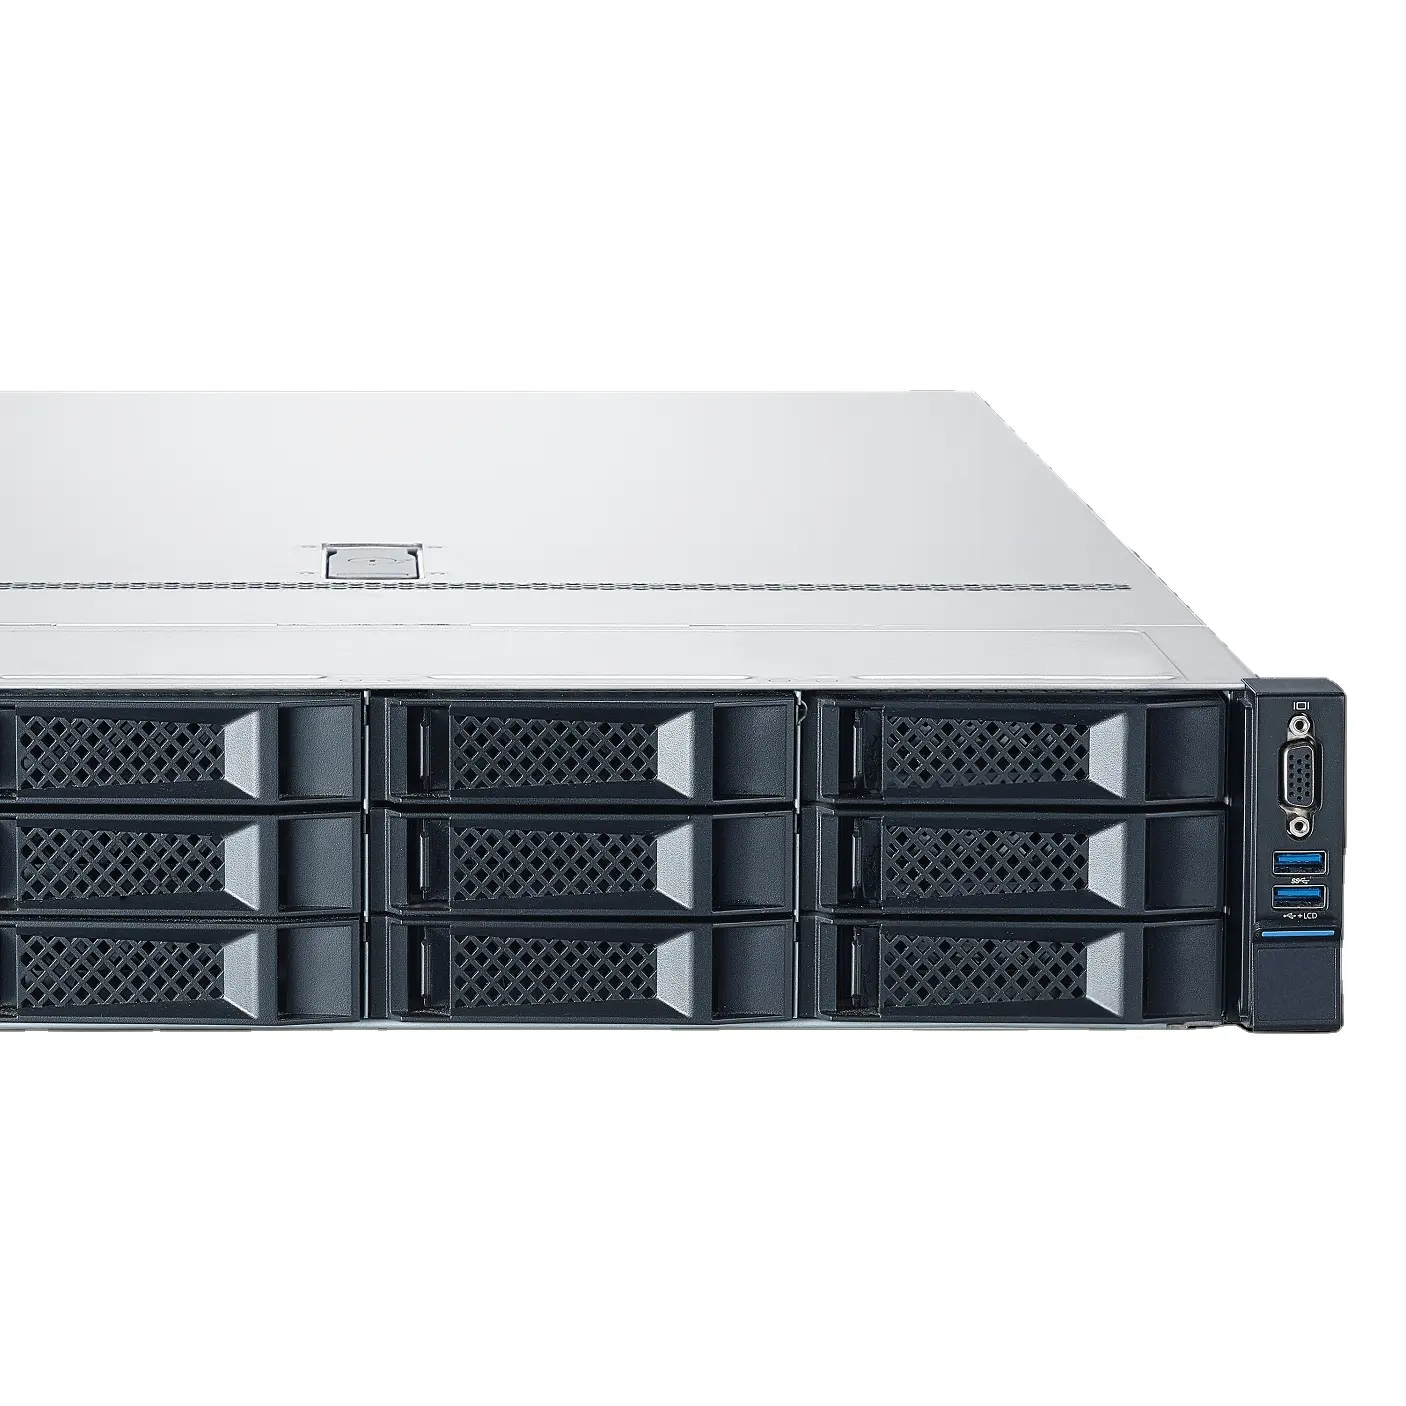 빠른 배송 뜨거운 판매 NF5280A6 서버 랙 제온 은색 7313 프로세서 2U 듀얼 소켓 랙 서버